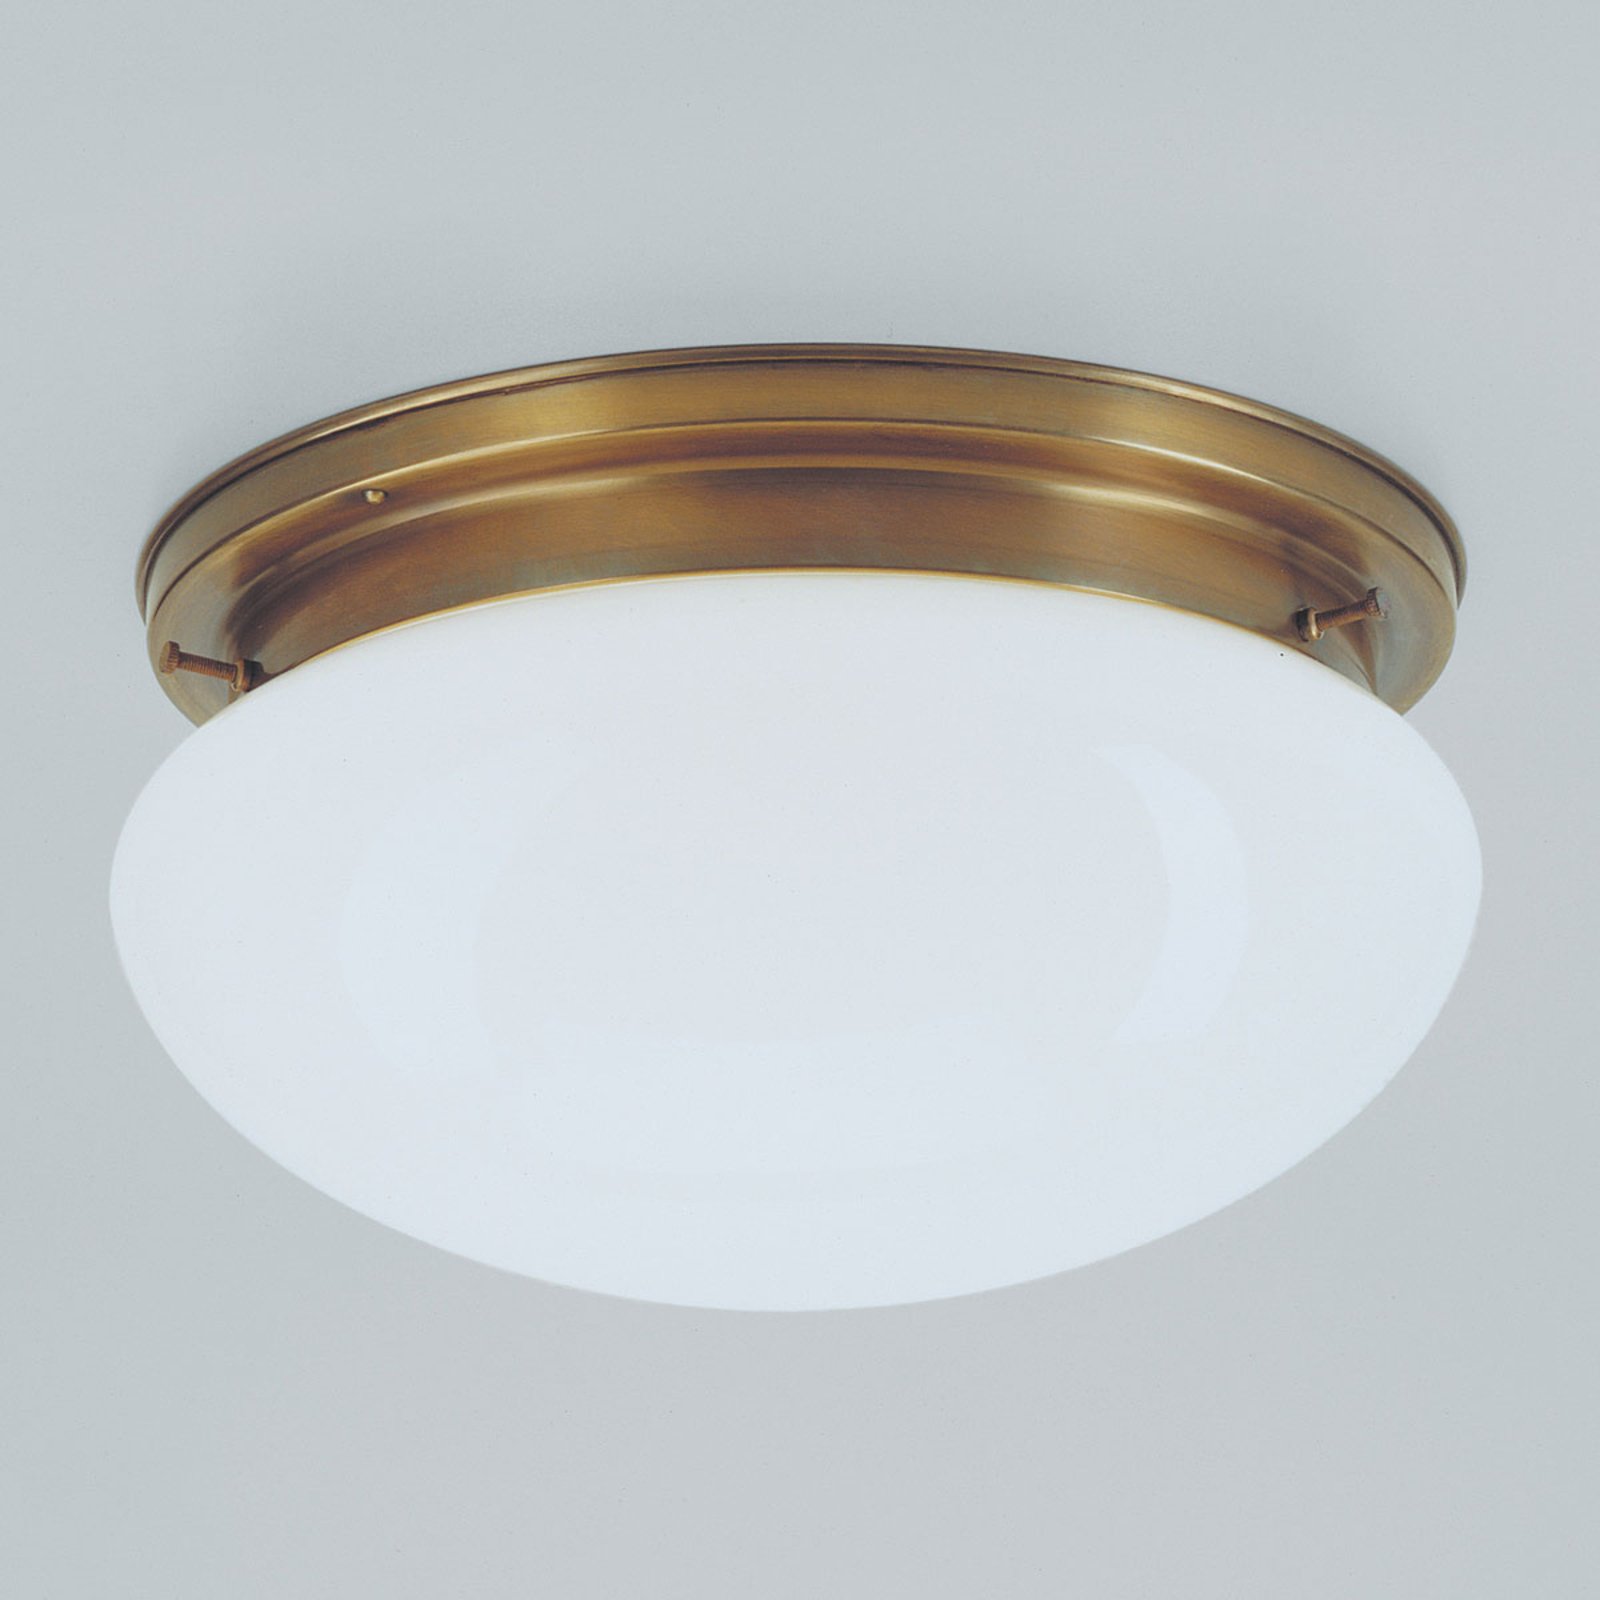 Classic Harry ceiling light, diameter 30 cm